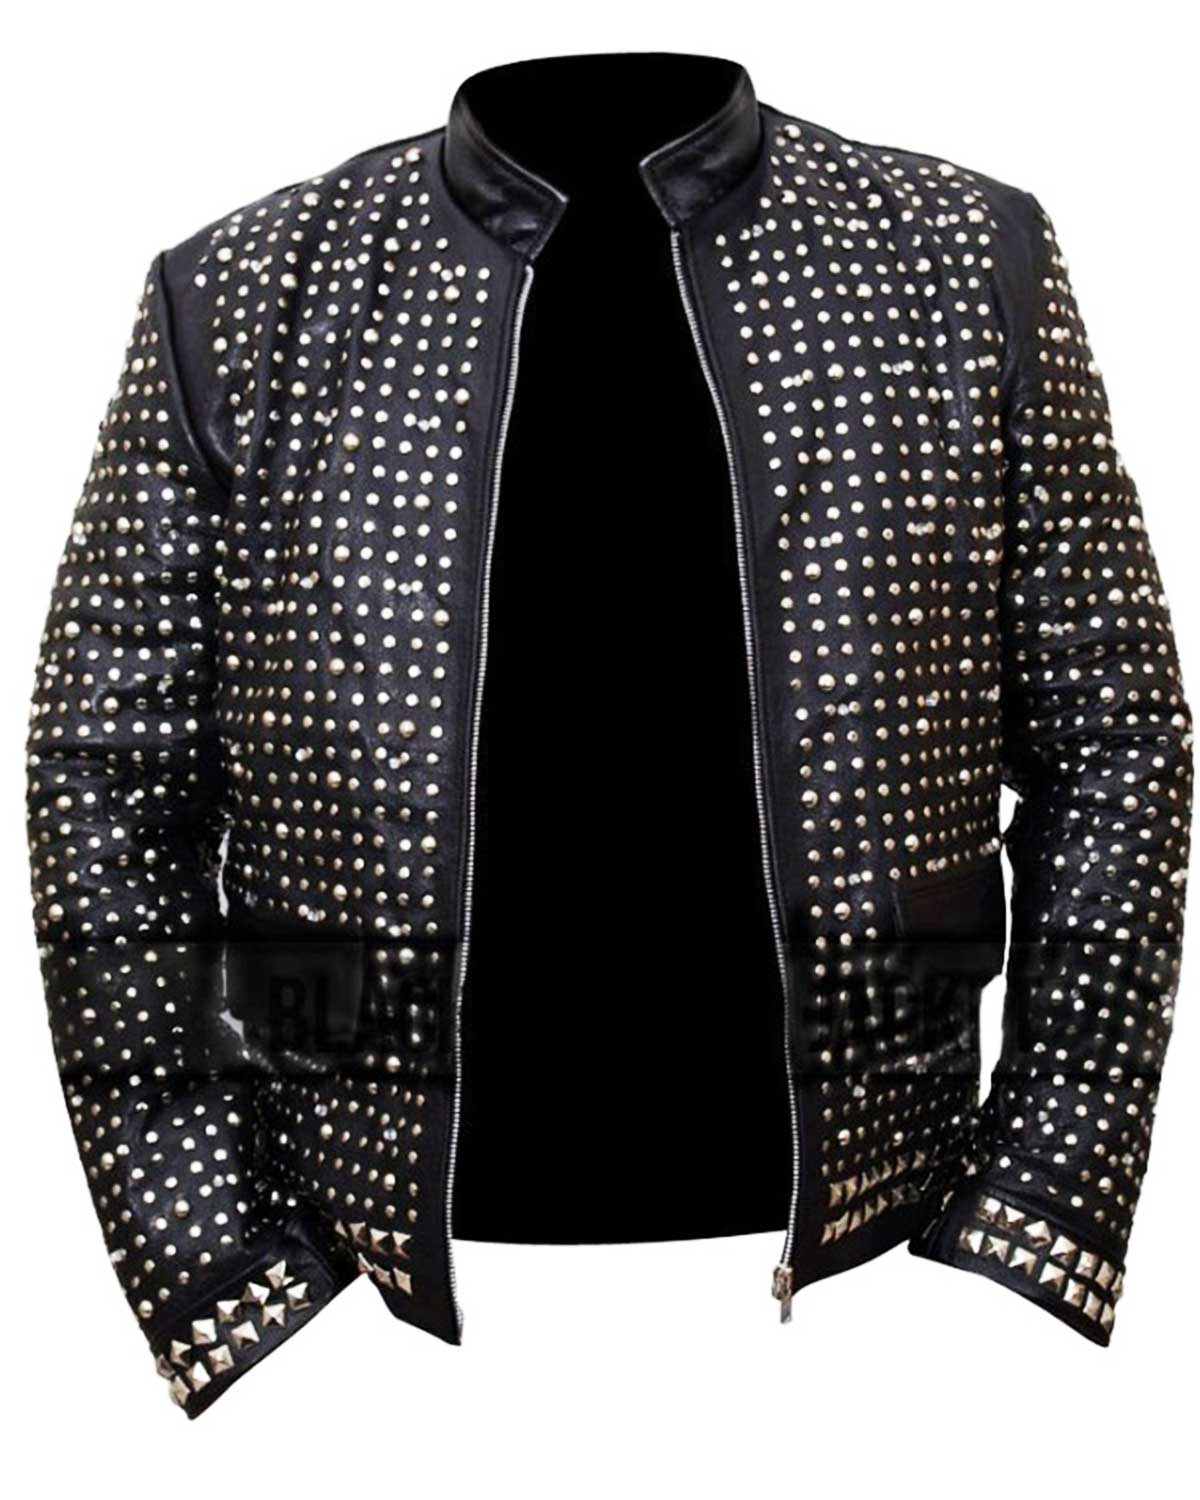 Chris Jericho WWE Light Up Black Leather Jacket | Elite Jacket